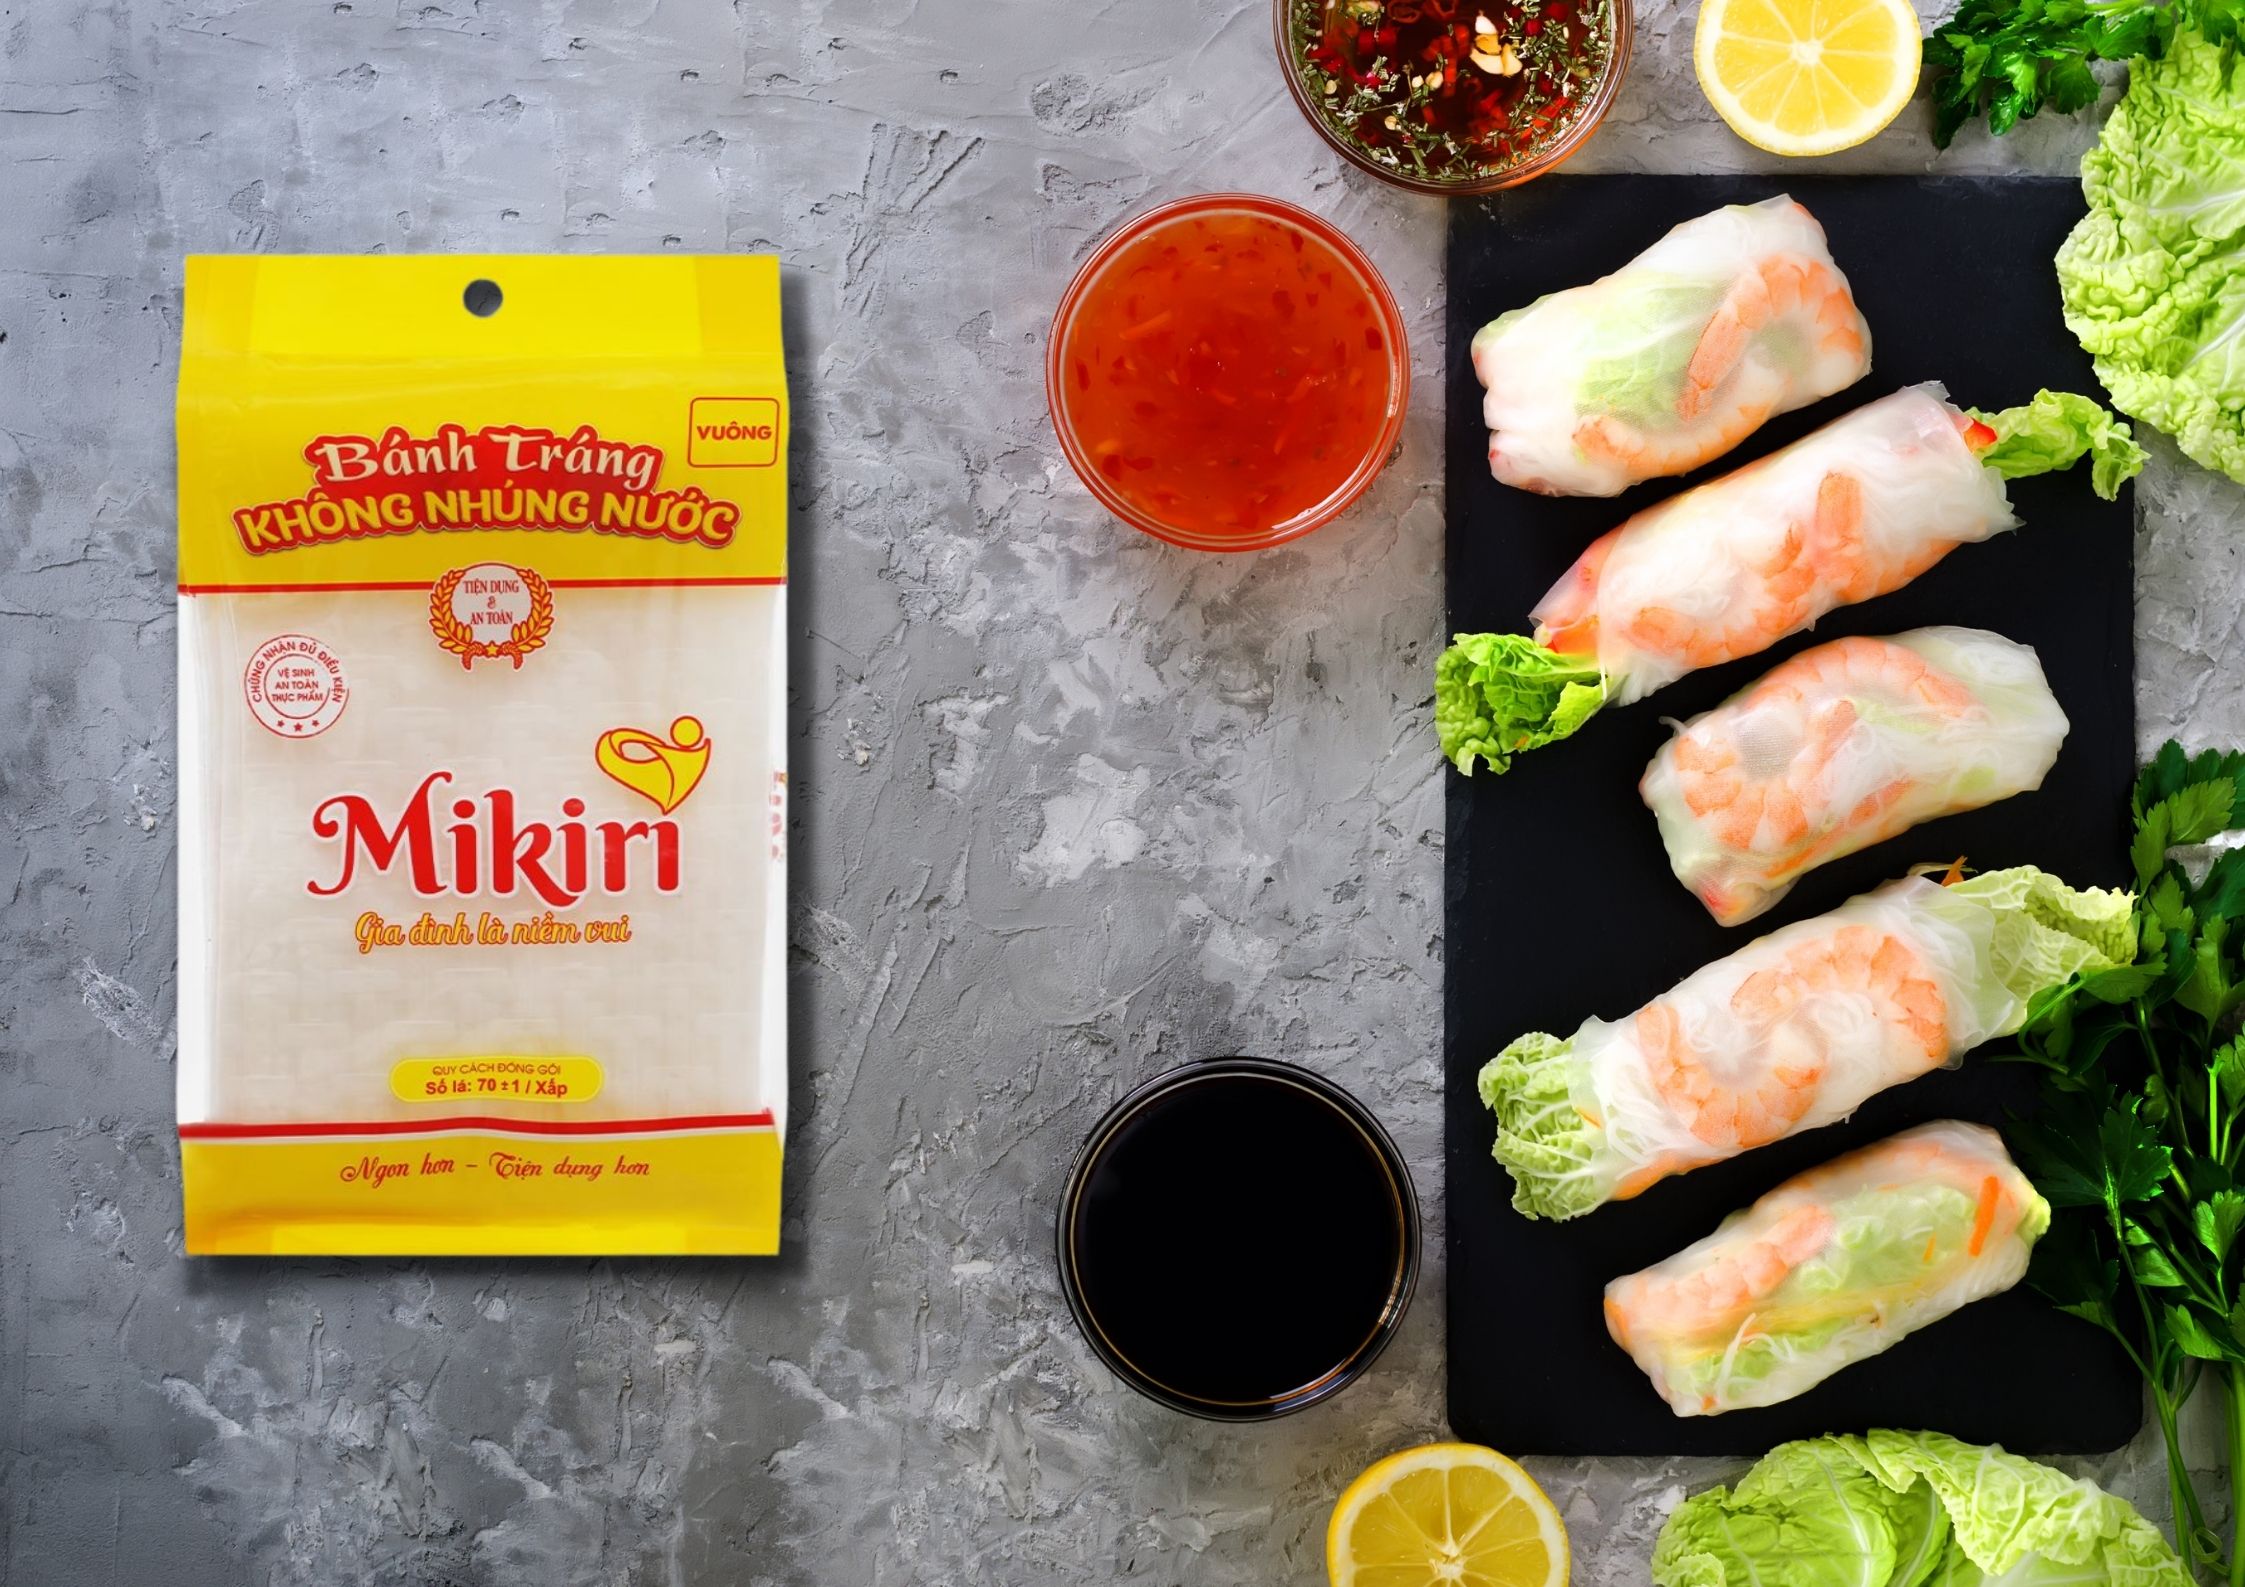 Mikiri - Nhà cung cấp bánh tráng gạo không nhúng nước Banh-trang-mikiri-03-9f5228df-ee2d-4233-9ad2-119831cd3096